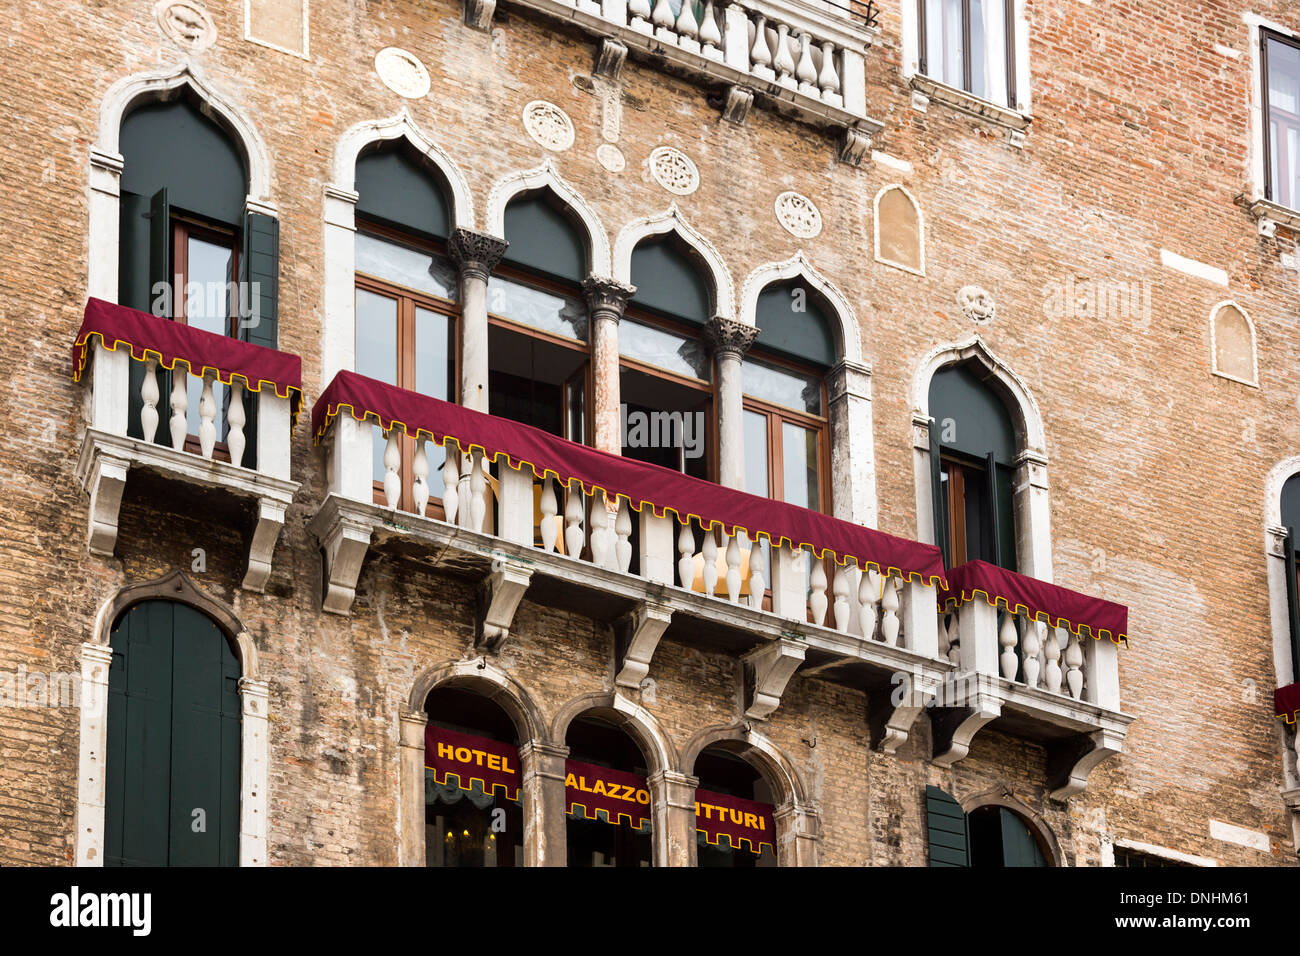 Low angle view of a hotel, Palazzo Vitturi, Campo Santa Maria Formosa, Venice, Veneto, Italy Stock Photo